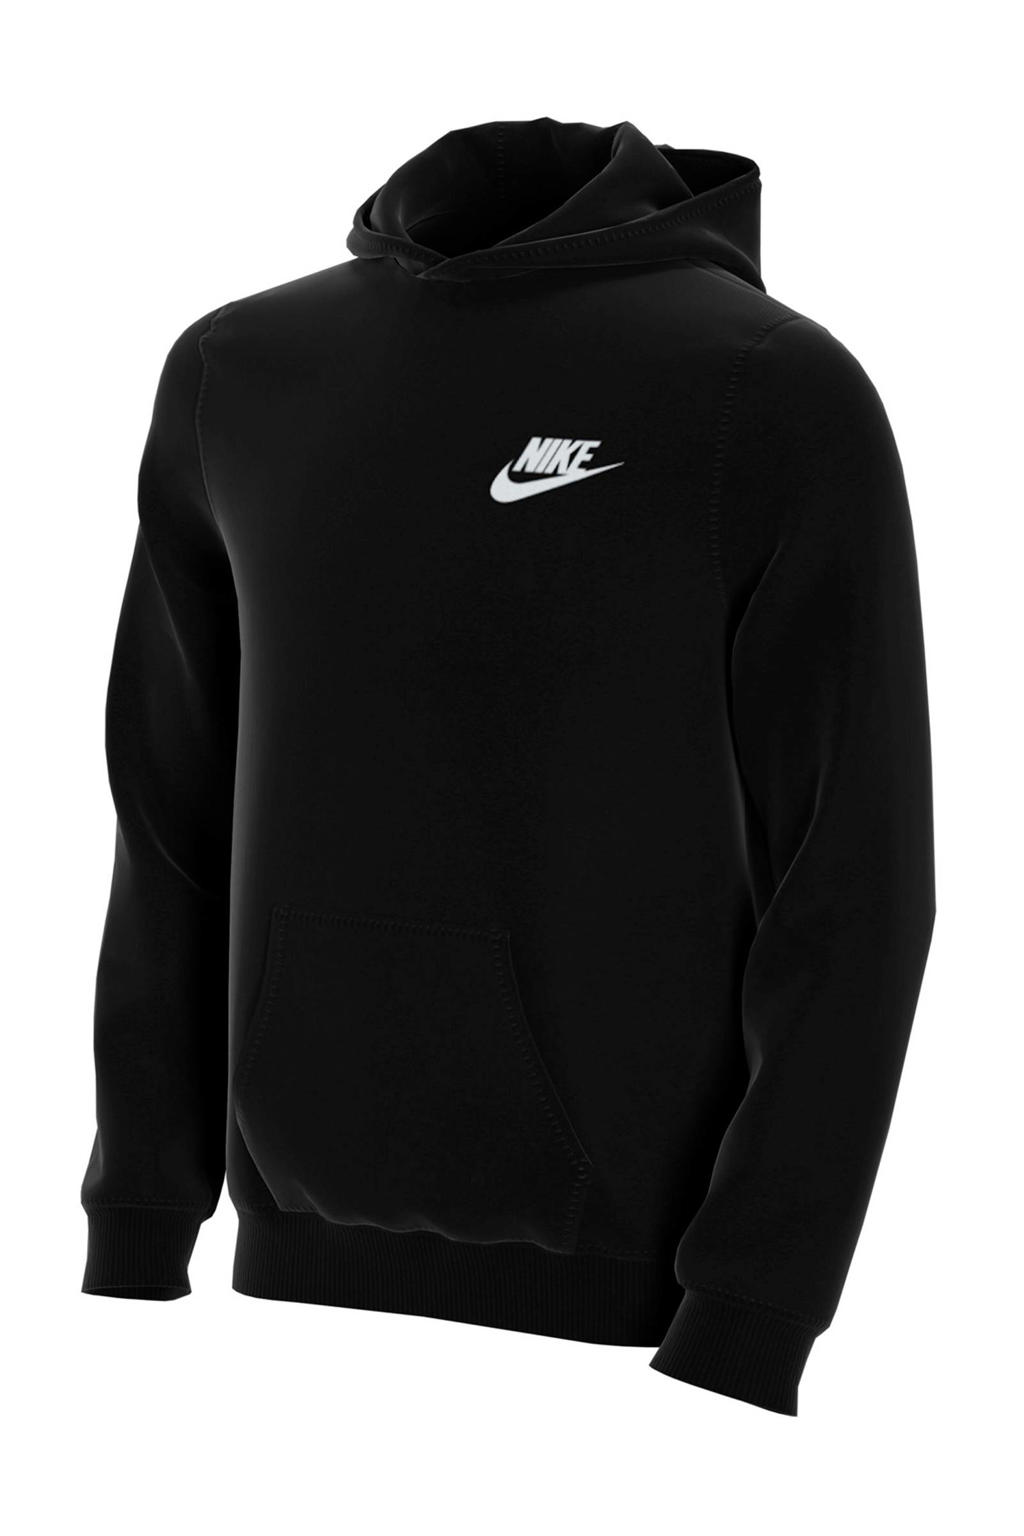 Zwart en witte jongens Nike hoodie van sweat materiaal met logo dessin, lange mouwen en capuchon